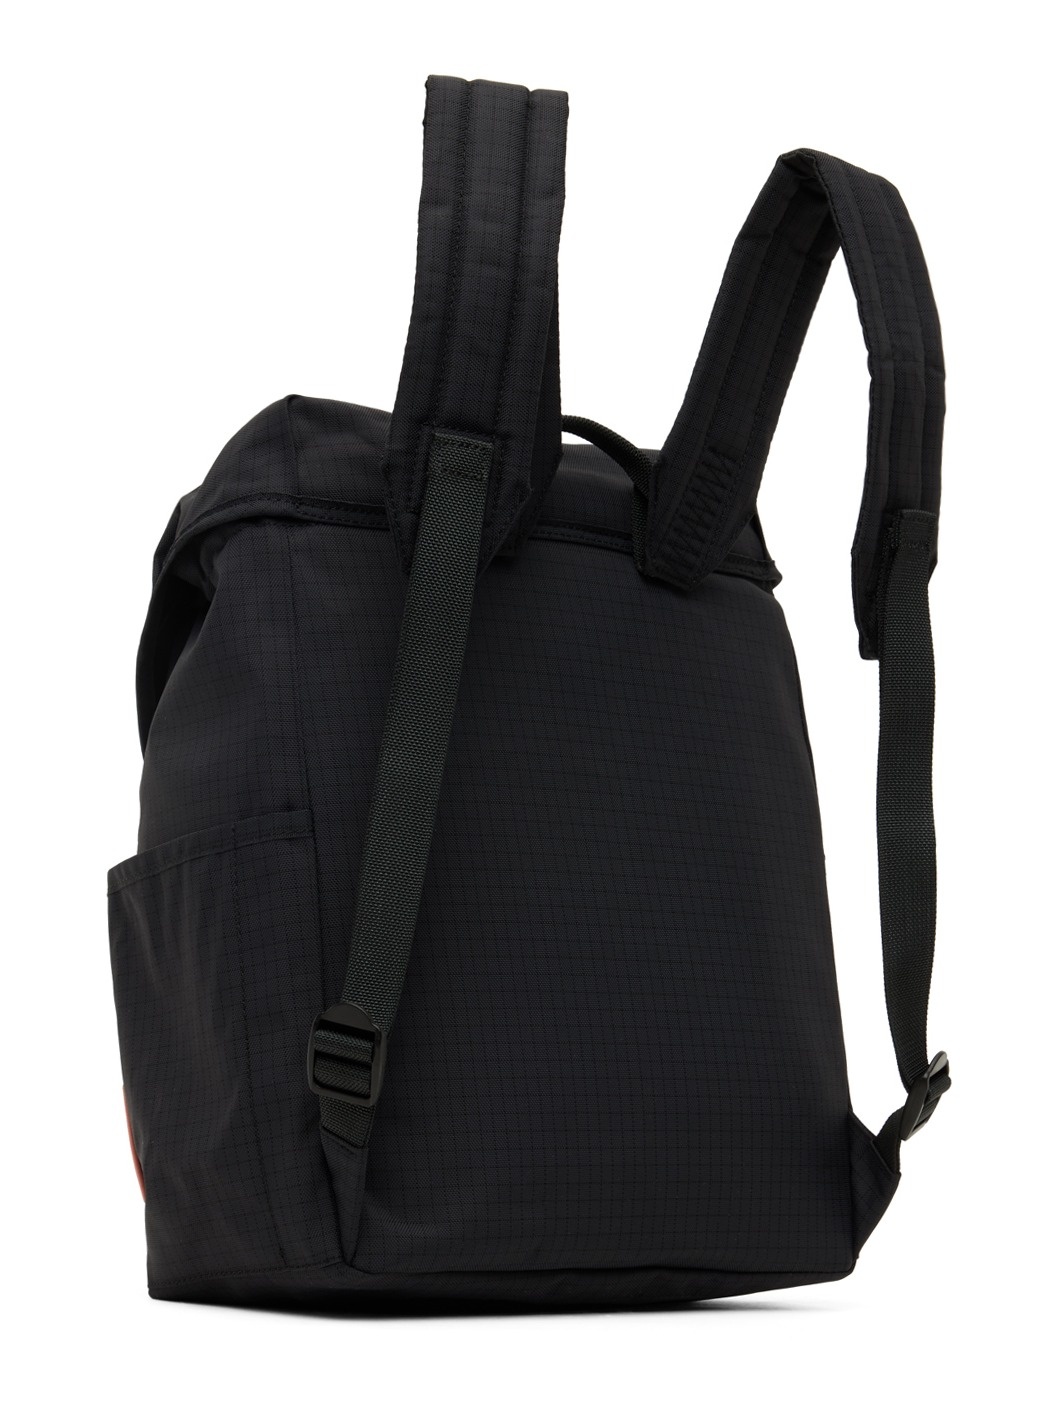 Black Ripstop Nylon Backpack - 3